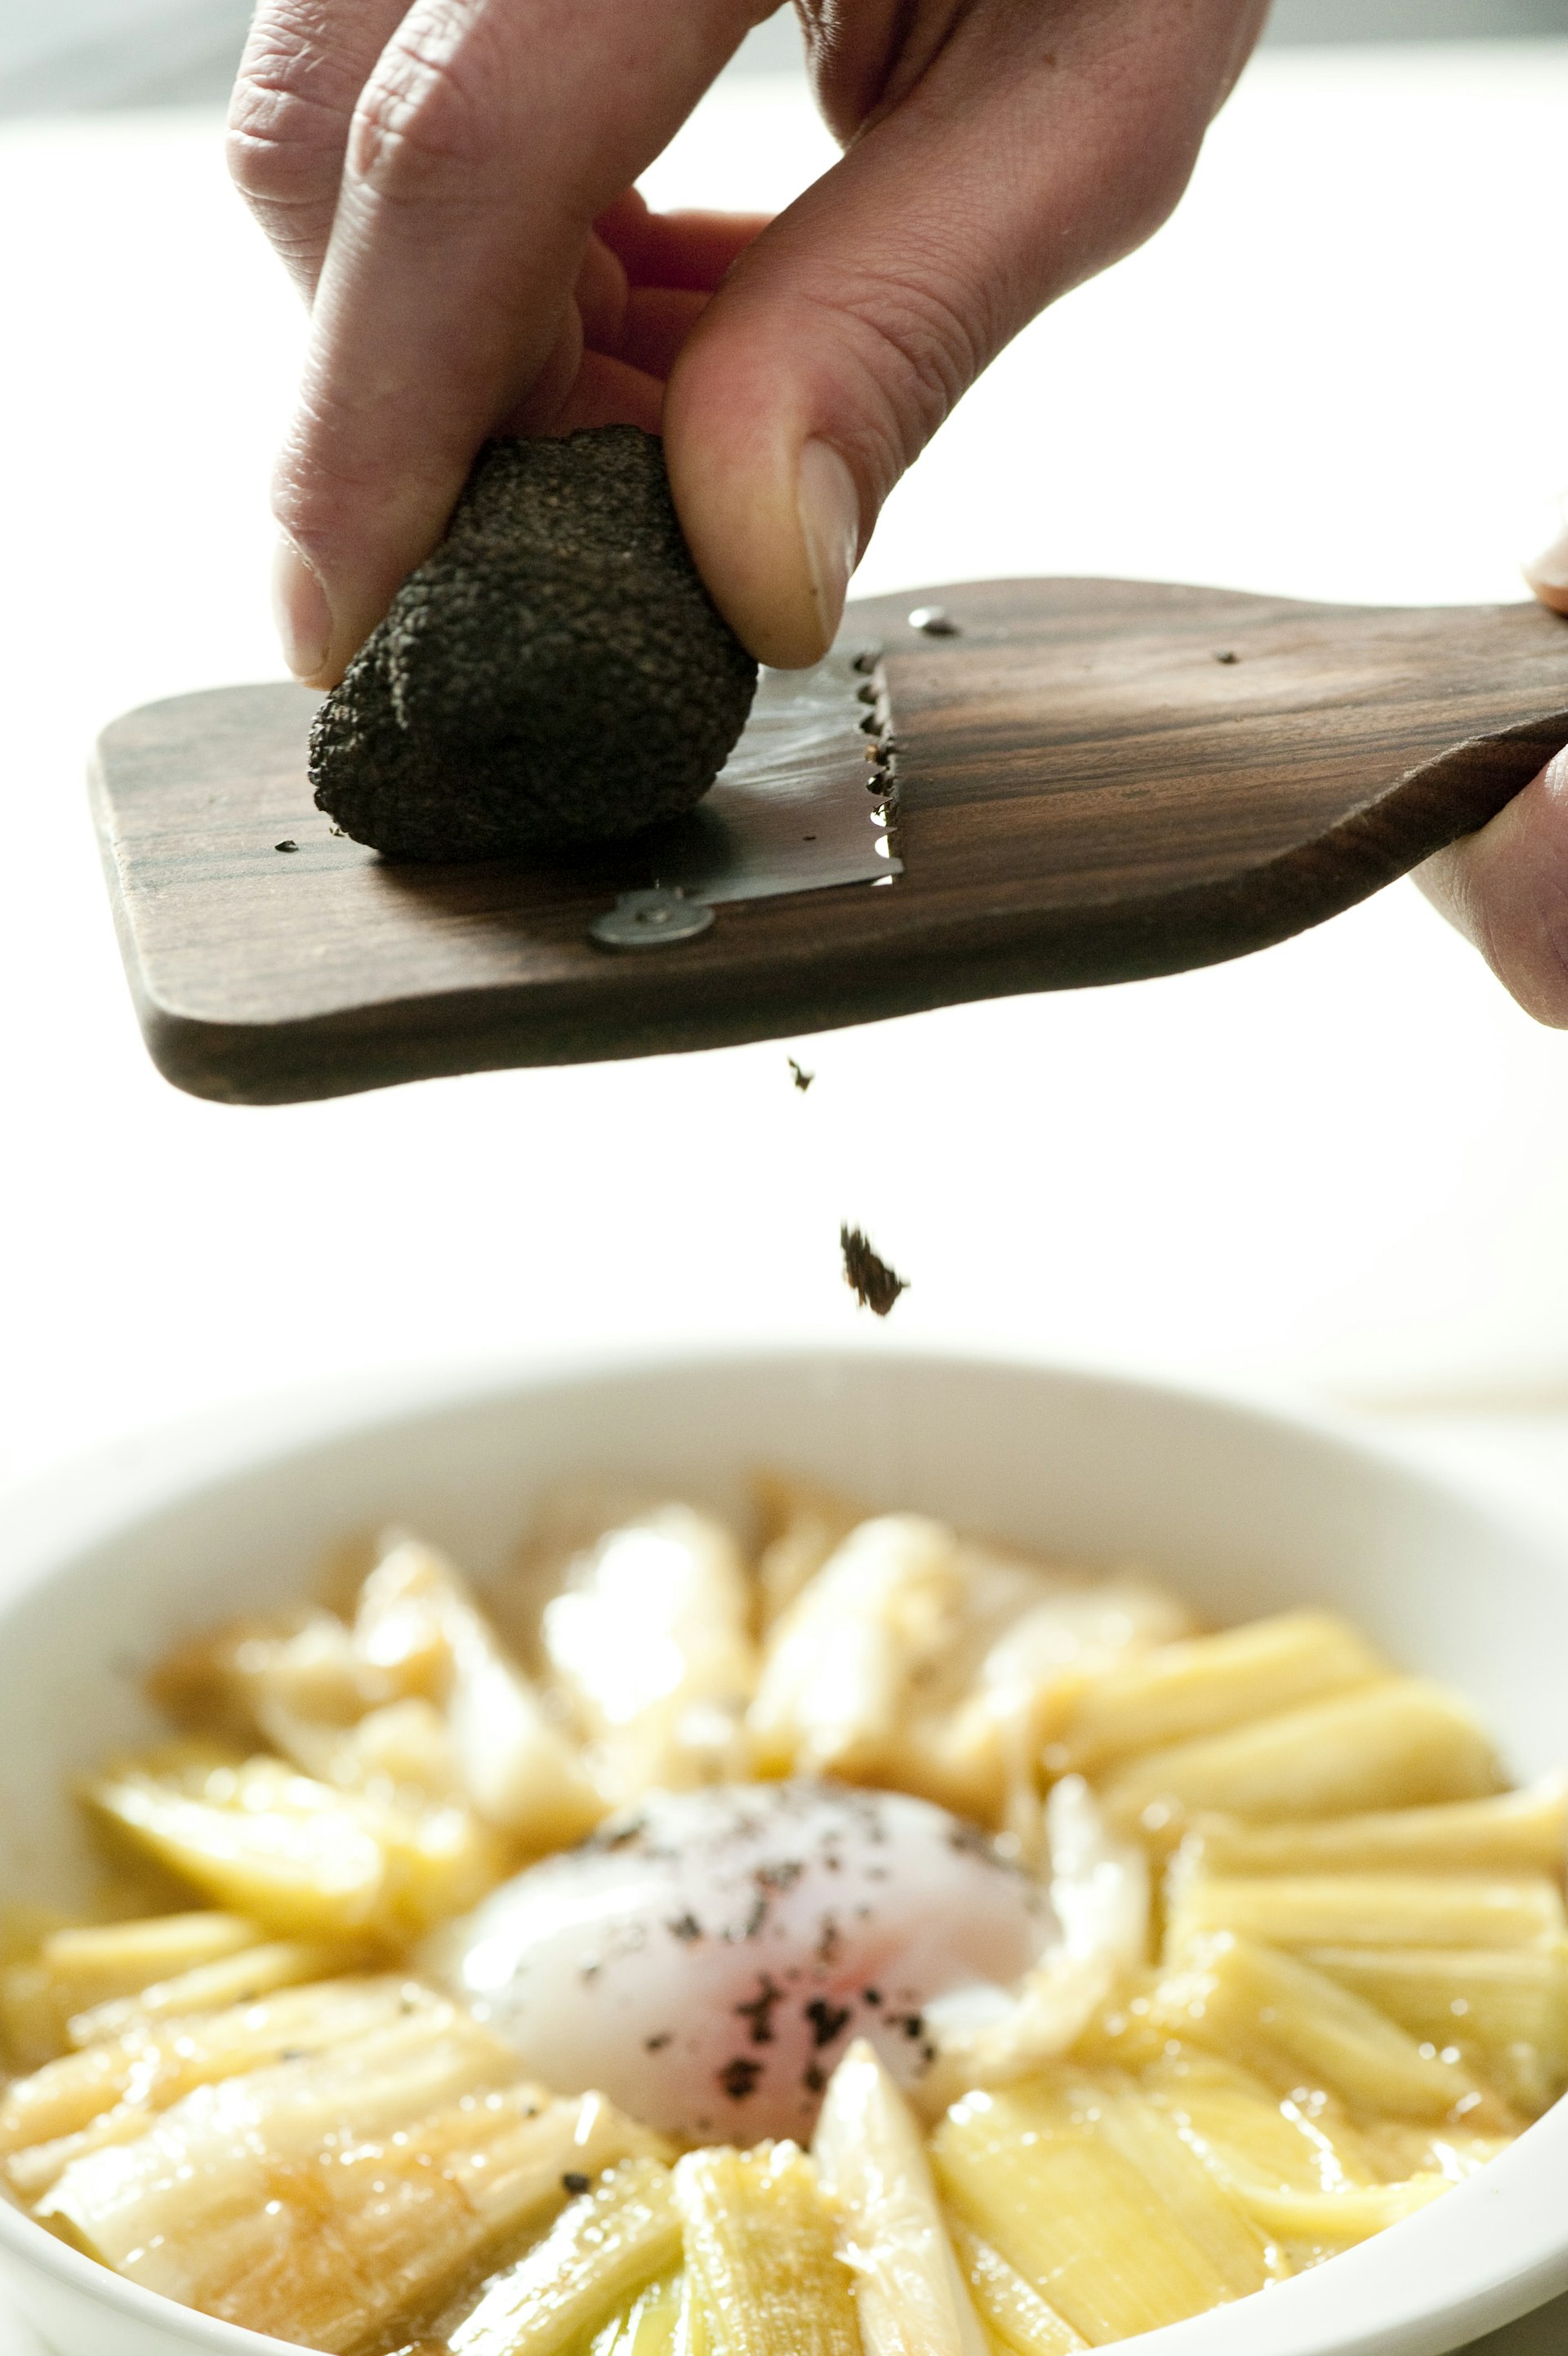 Italian truffles